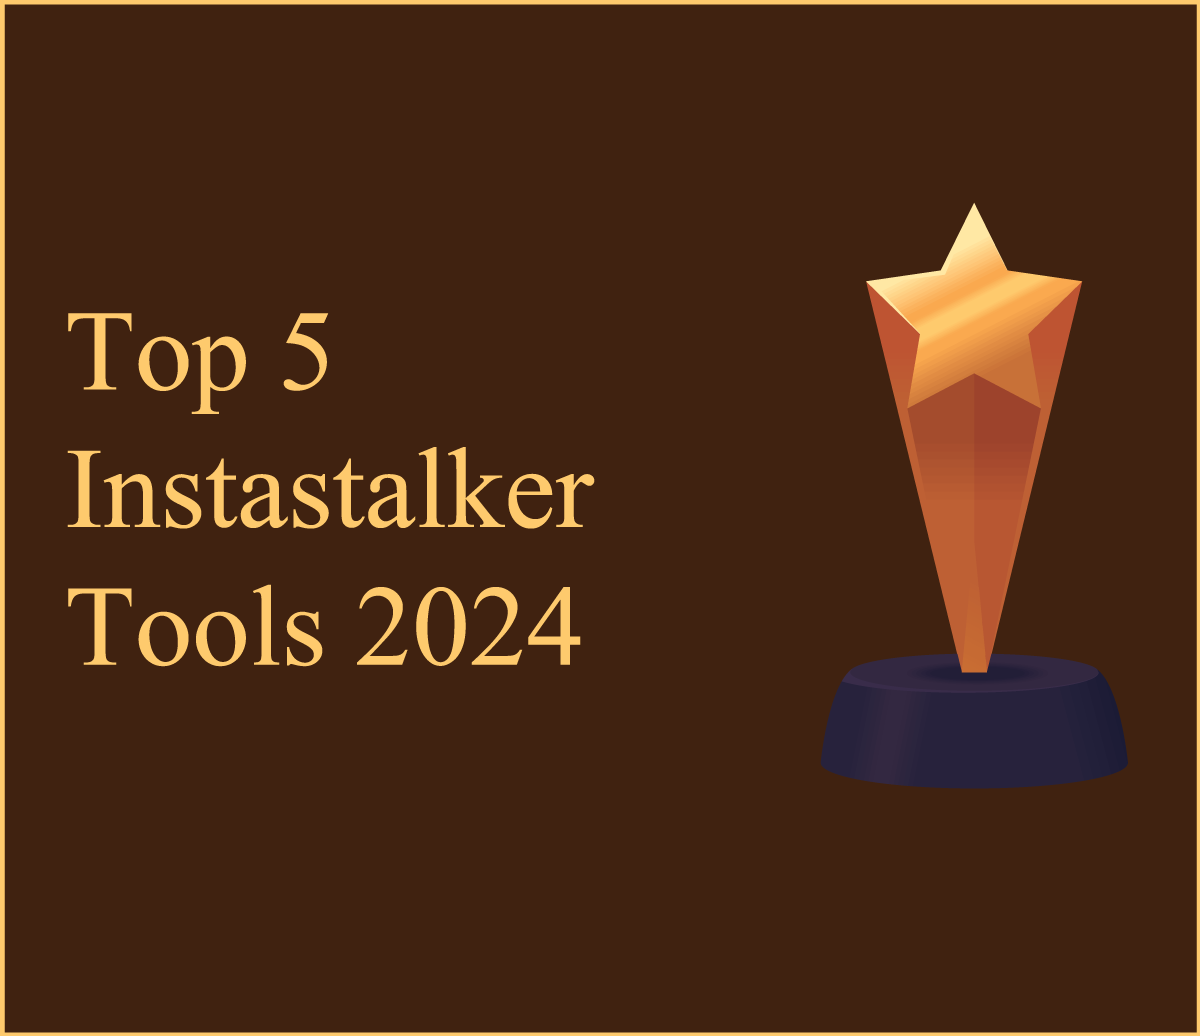 Top 5 Instastalker Tools 2024